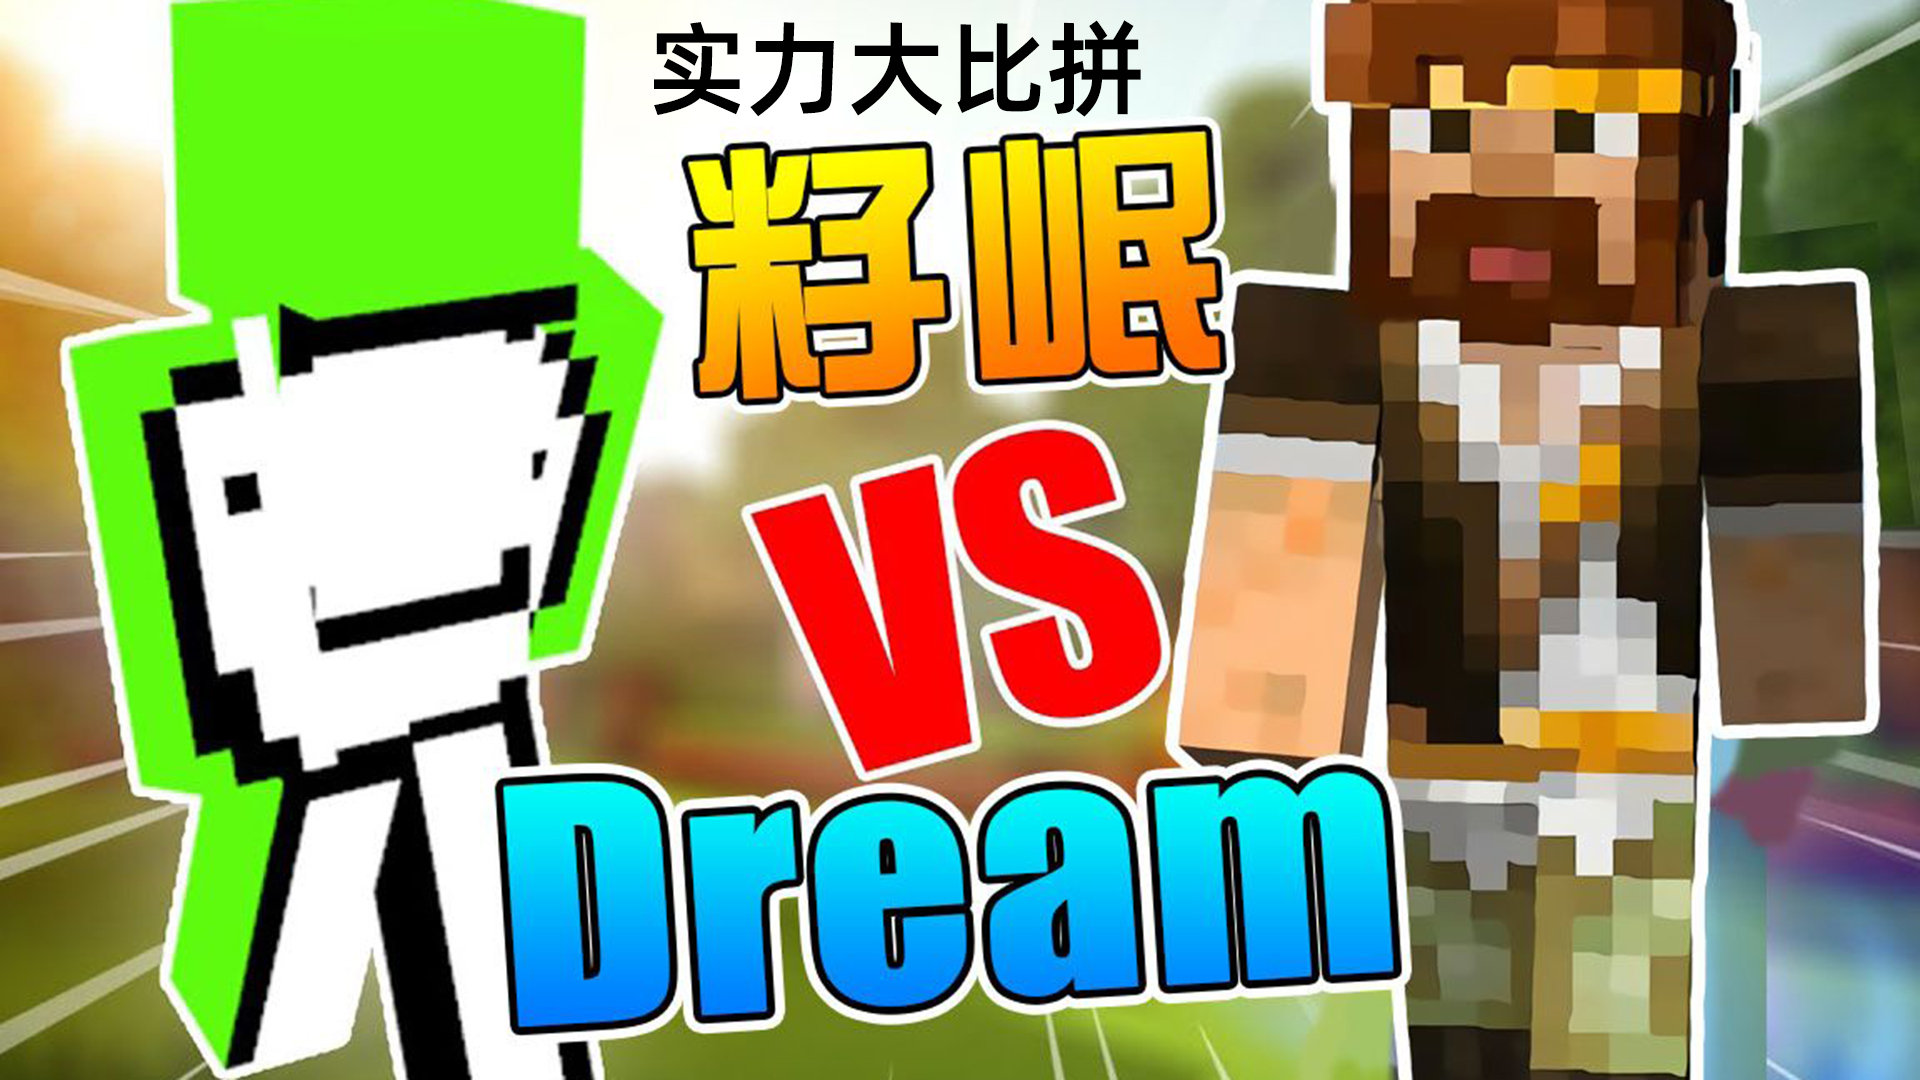 我的世界:dream vs 籽岷,两位绝世高手,谁才是真正的王者?